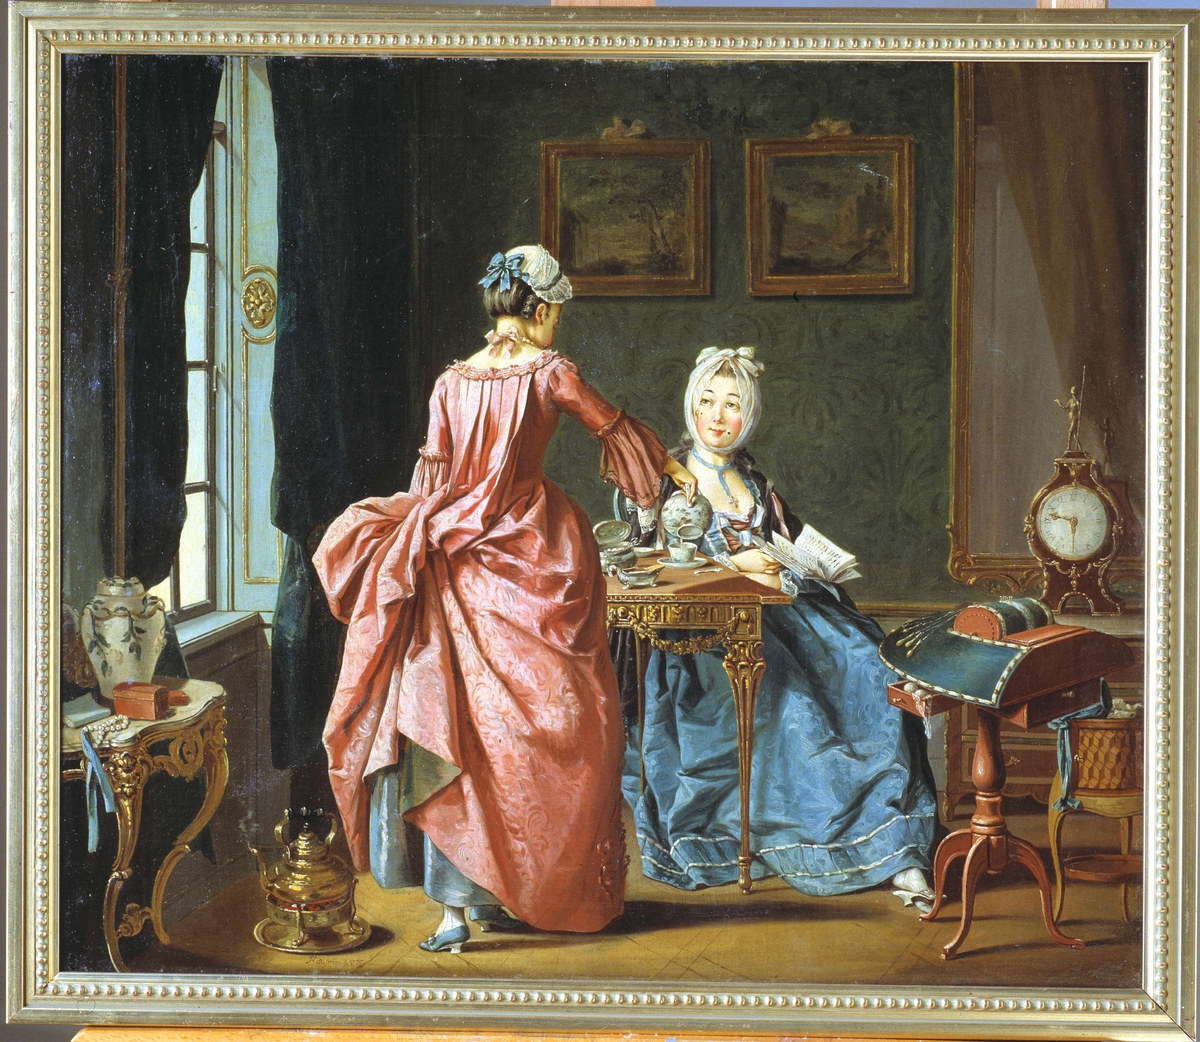 Oljemålning av Pehr Hilleström, signerad 1775. "'Ett fruentimmer sitter och läser, kammarjungfrun kommer med Thé". Nordiska museet inventarienummer 177655.